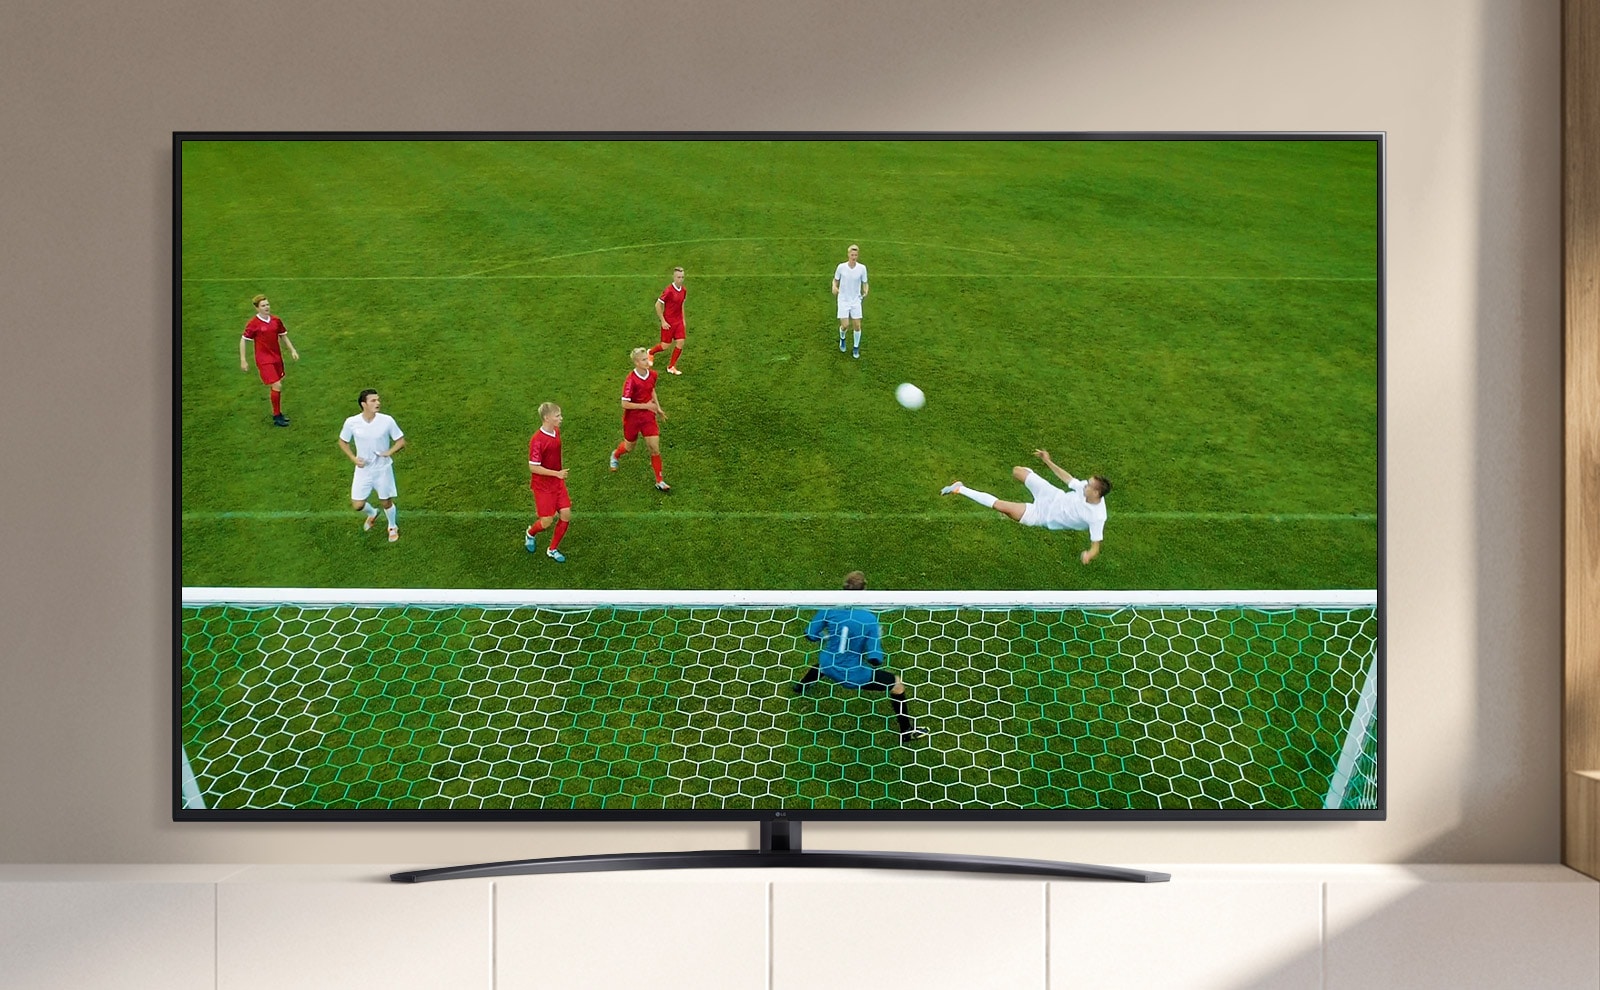 На екрані телевізора відображається відео з футбольним гравцем, який забиває гол під час матчу. (Відтворення відео.)